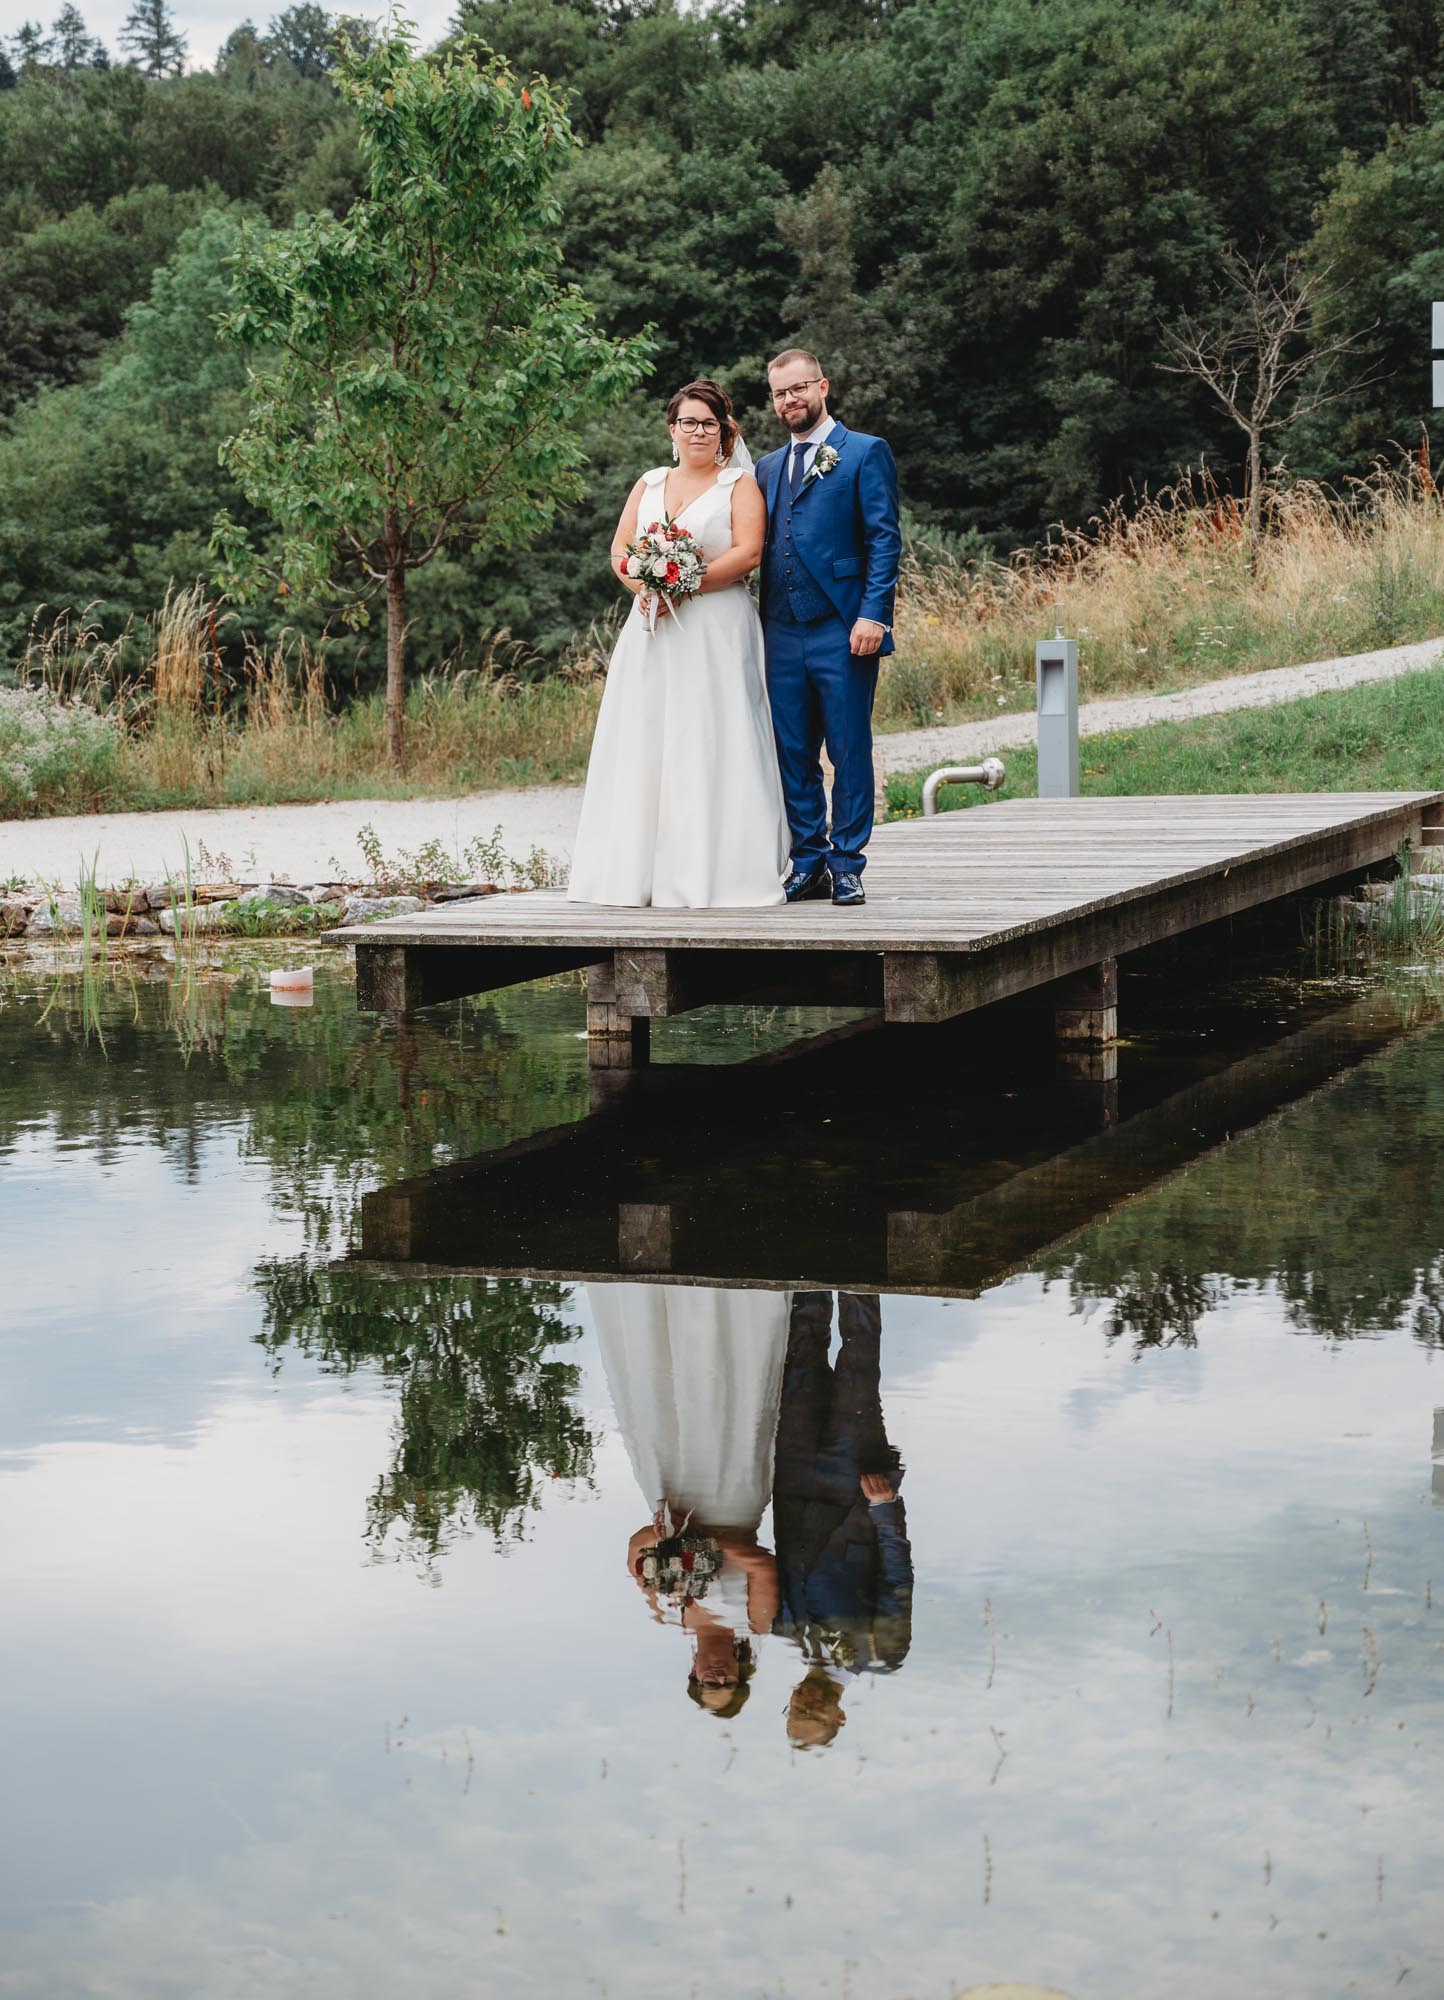 Hochzeitsfotos_Hochzeitsreportage in Wien_Brautpaarshooting_Brautpaar am Steg mit Spiegelung im Teich